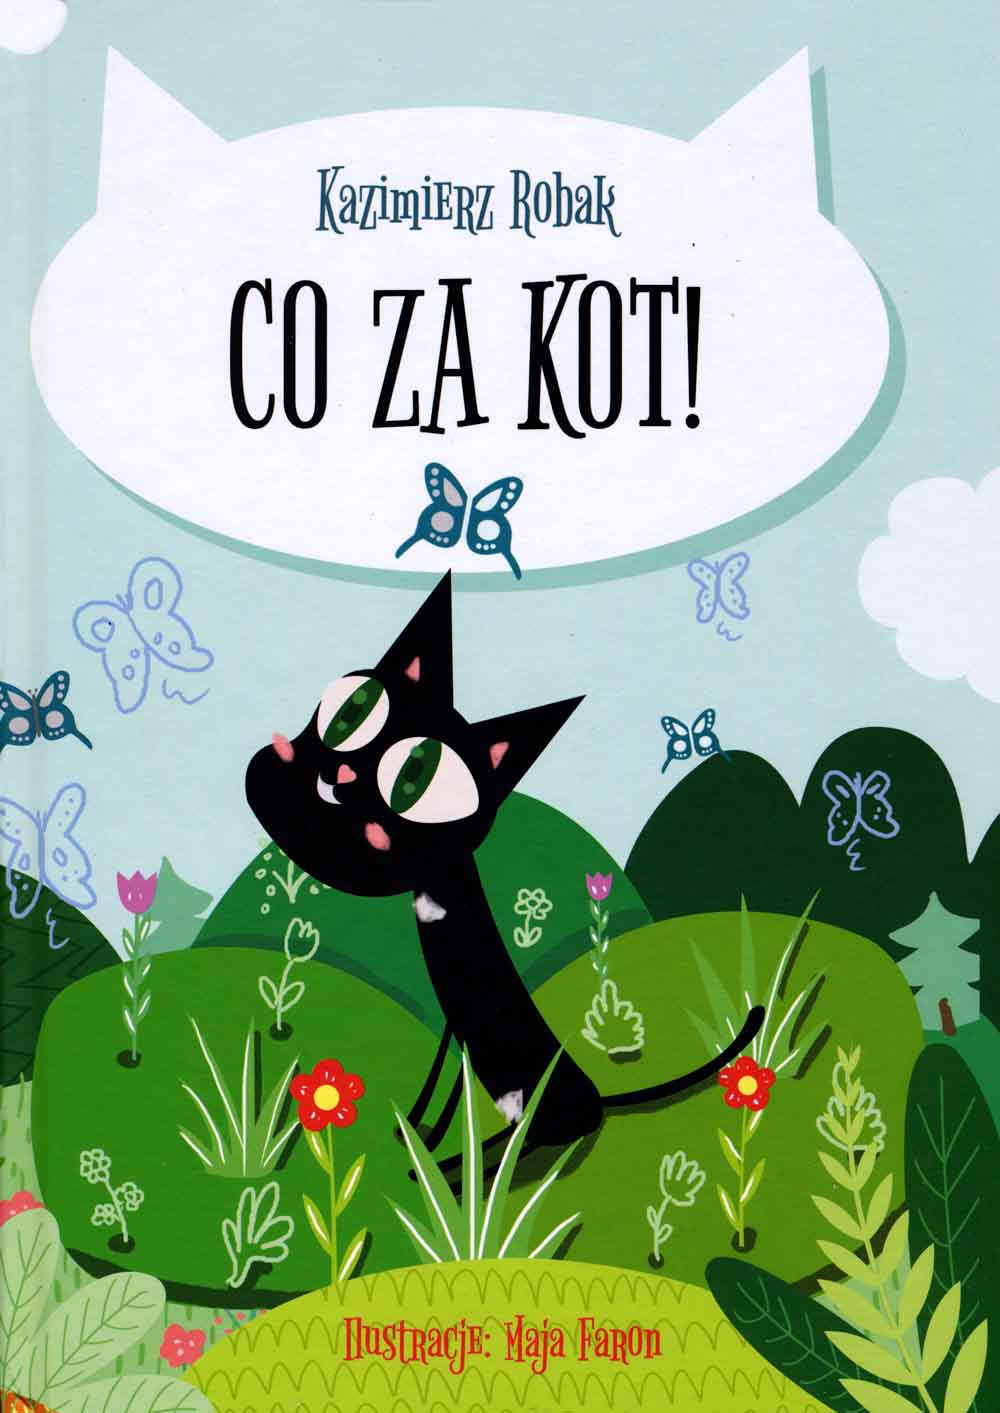 Co za kot, Figa, Dobry Noe Press, Kazimierz Robak, dla dzieci, Karol Choiński, Światłoczułe